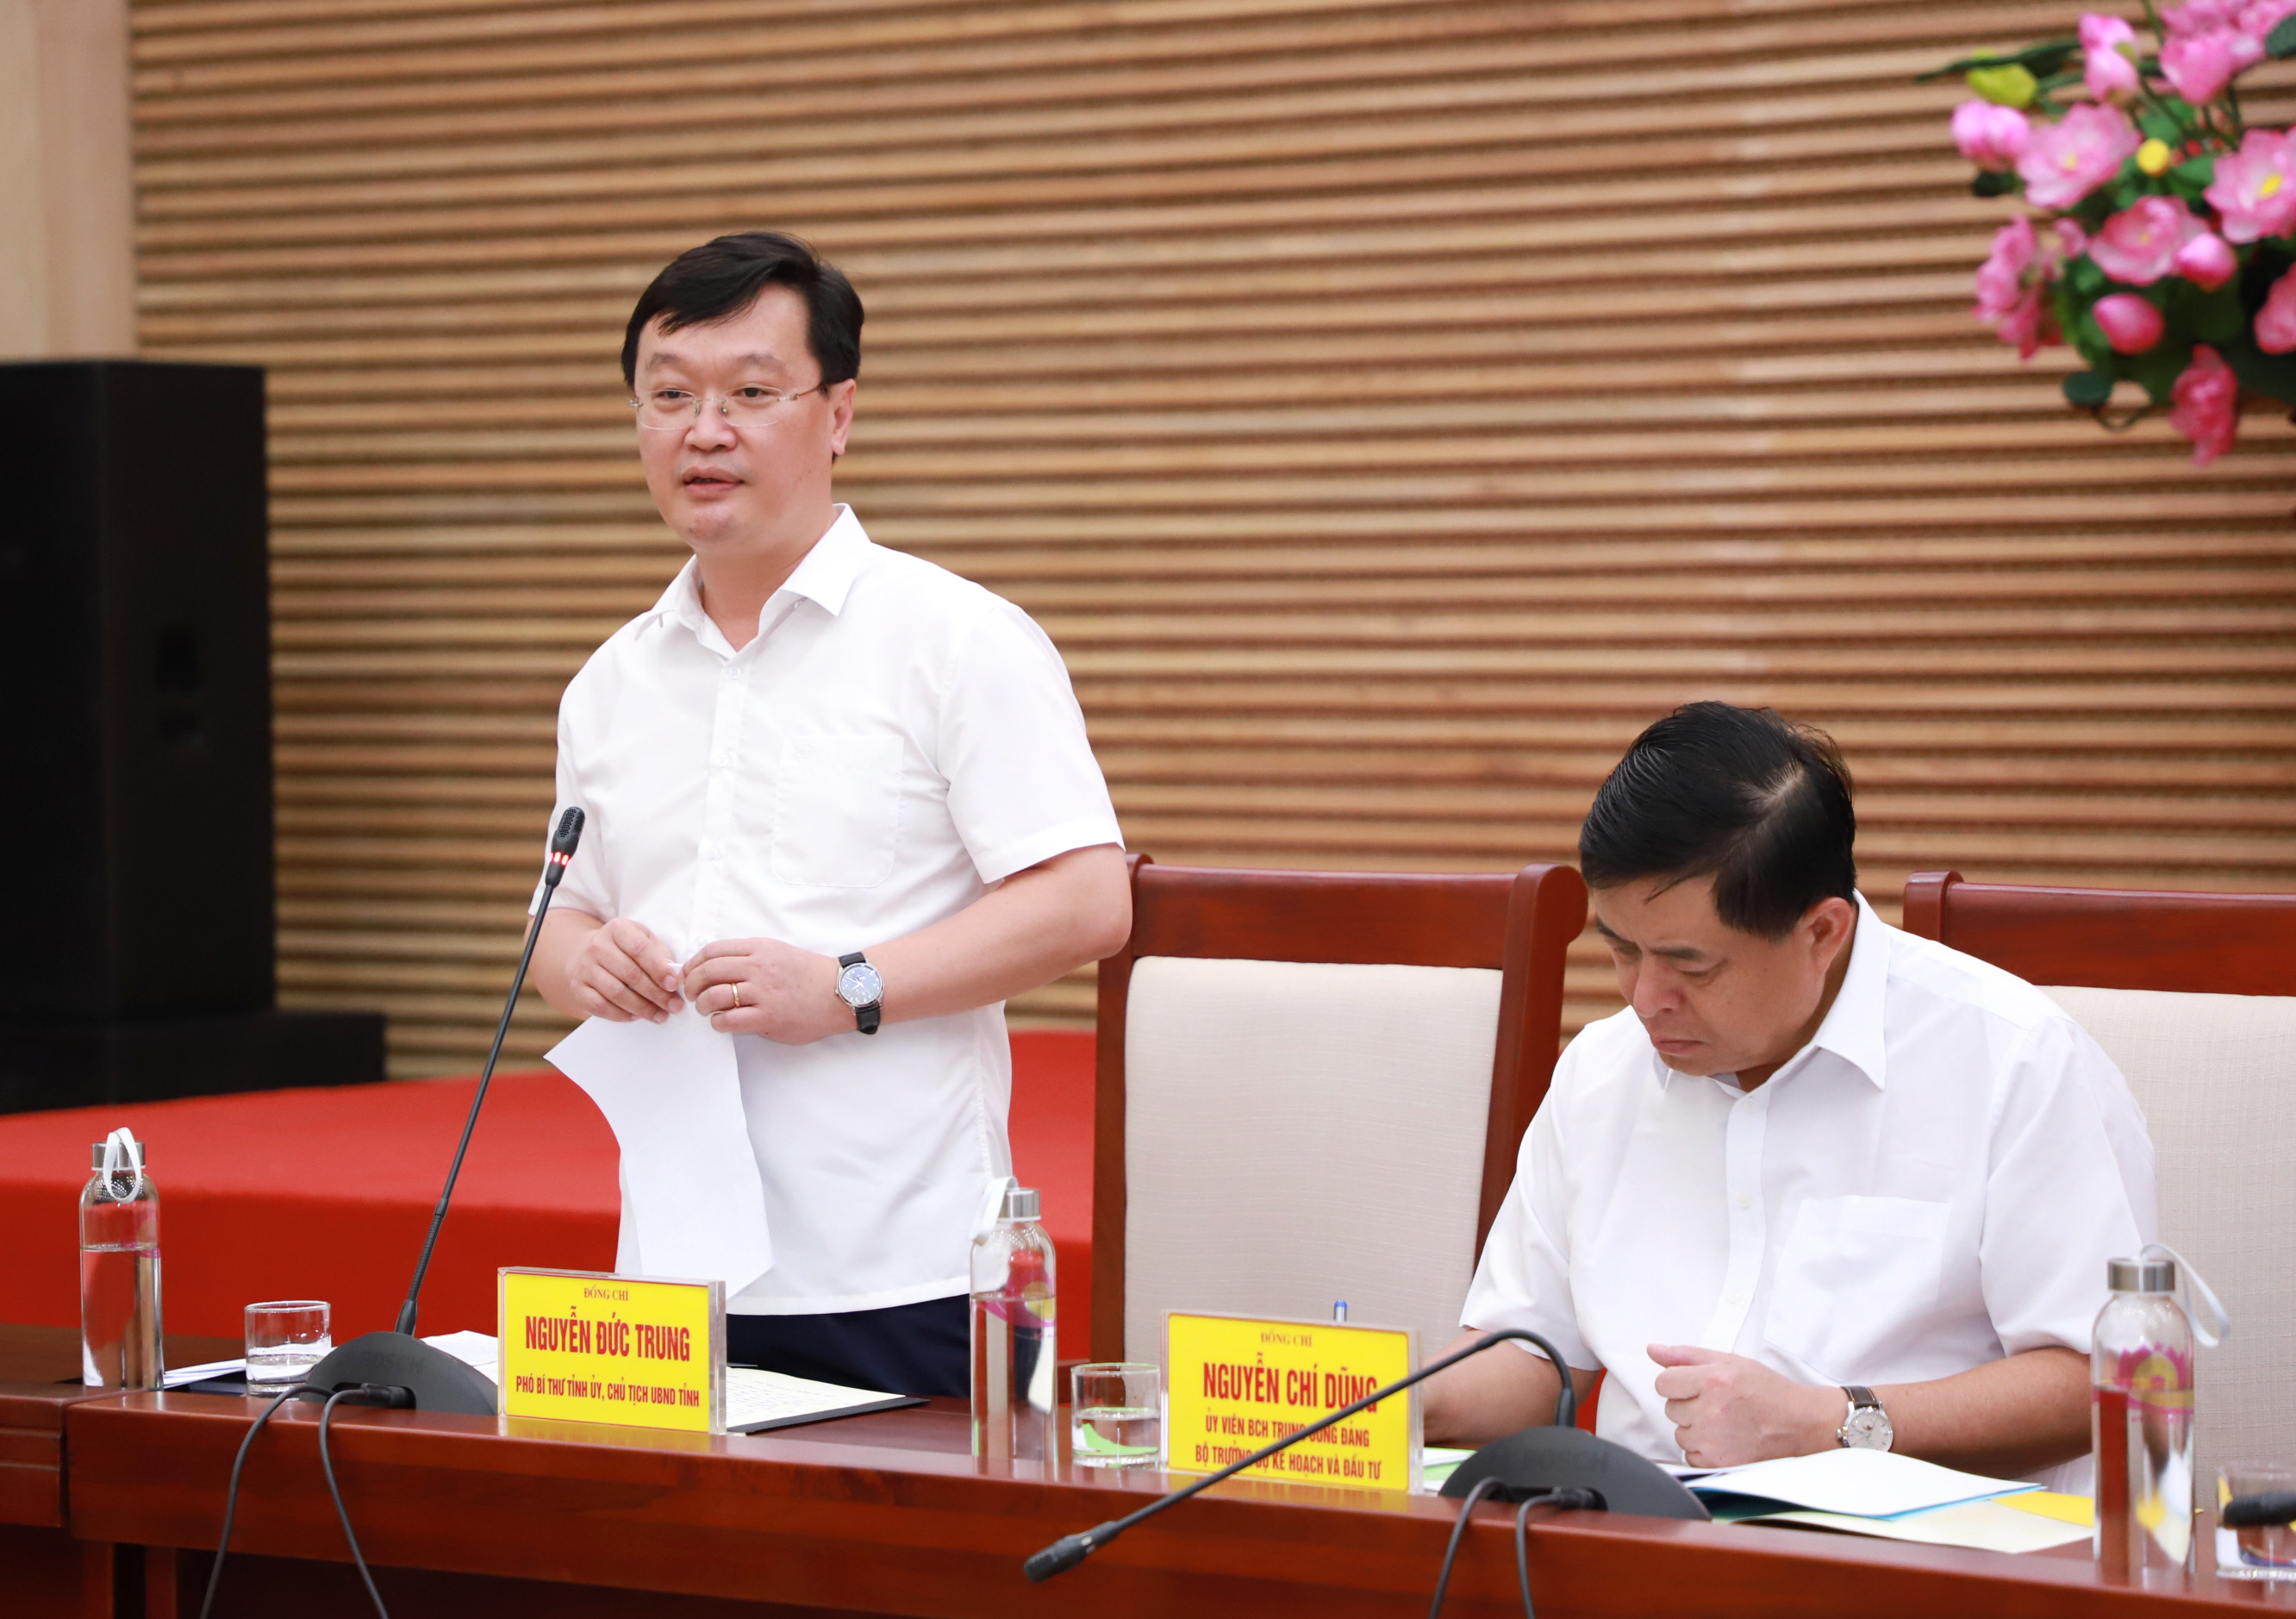 Đồng chí Nguyễn Đức Trung - Chủ tịch UBND tỉnh báo cáo tình hình kinh tế - xã hội và kết quả giải ngân vốn đầu tư công. Ảnh: Thành Duy